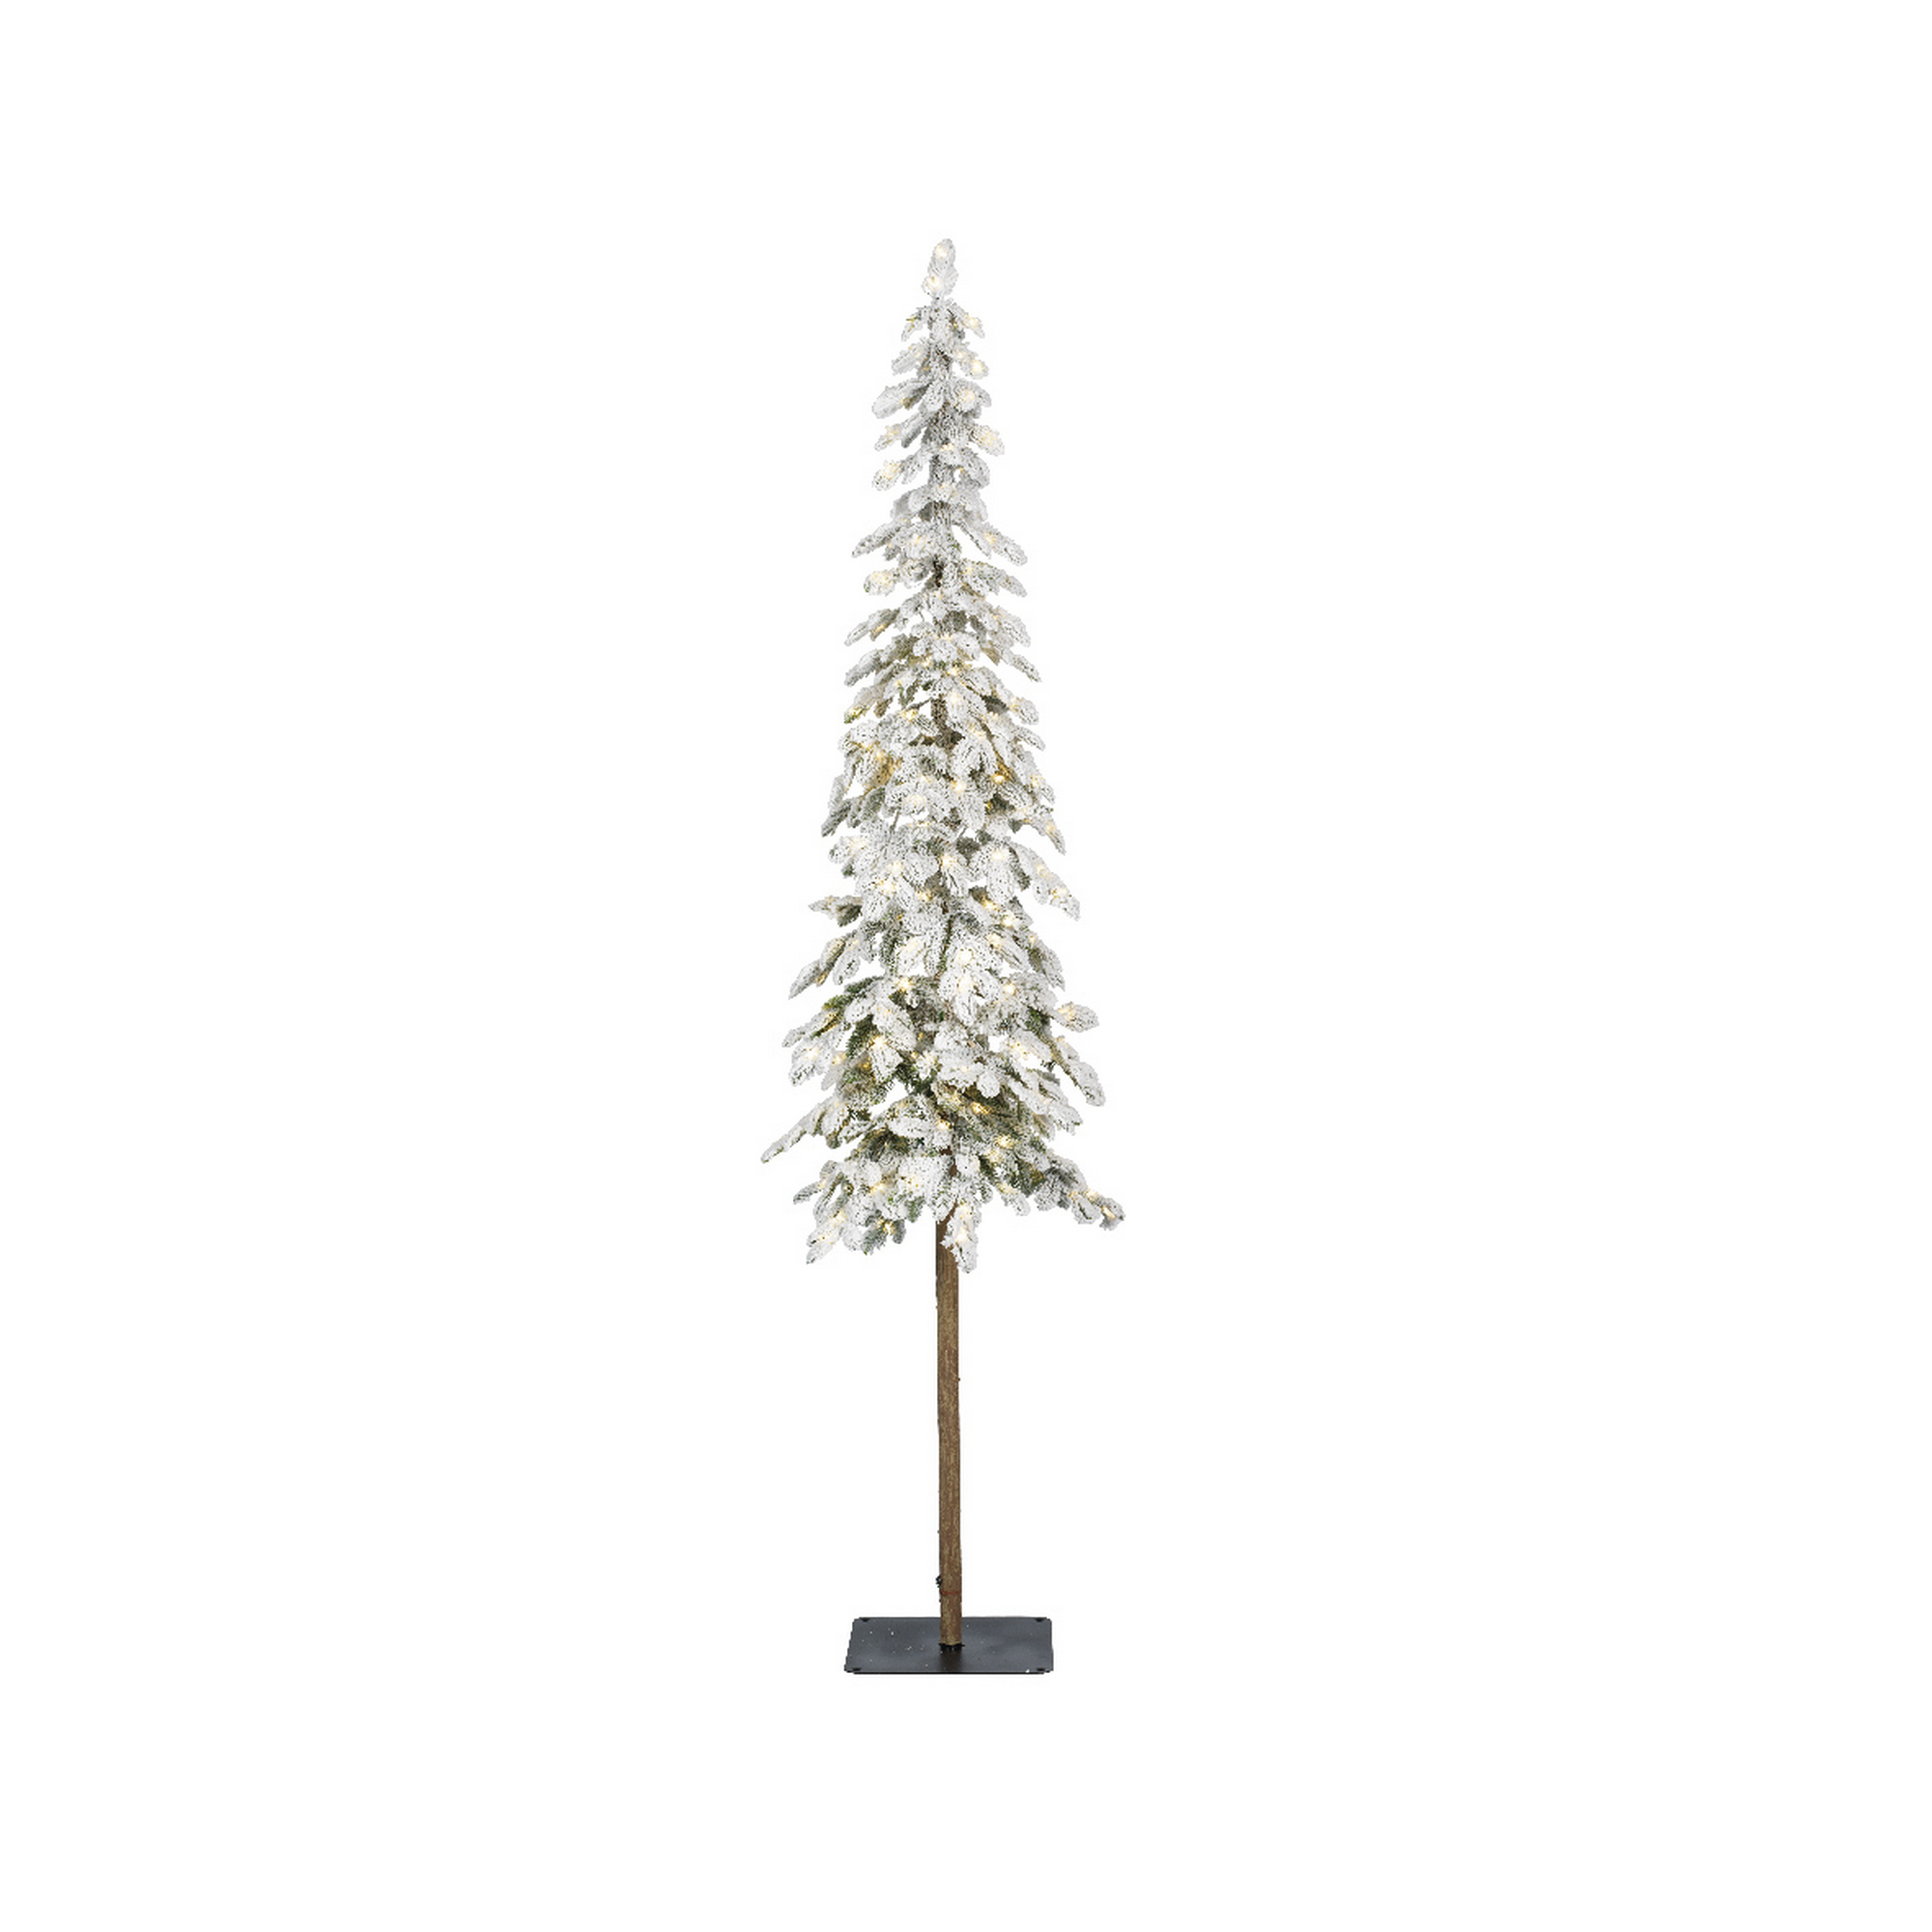 Künstlicher Weihnachtsbaum 'Alpine' grün schneebedeckt 180 cm, mit LED-Beleuchtung + product picture